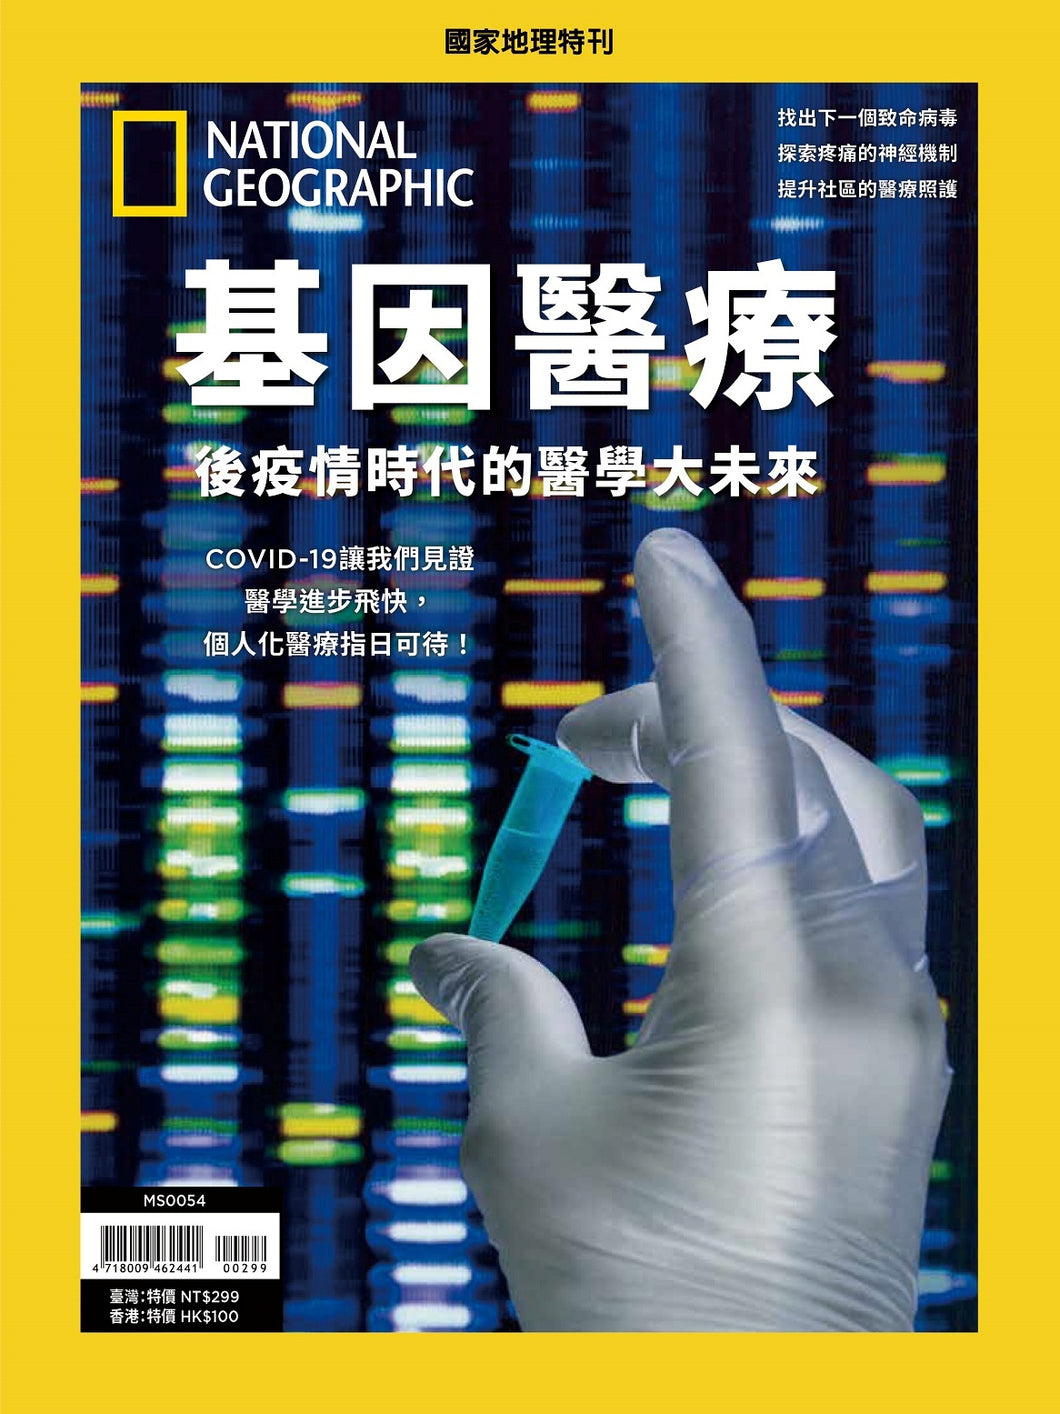 國家地理雜誌 中文版 紙本 訂閱 1年12期 合購 《基因醫療》特刊